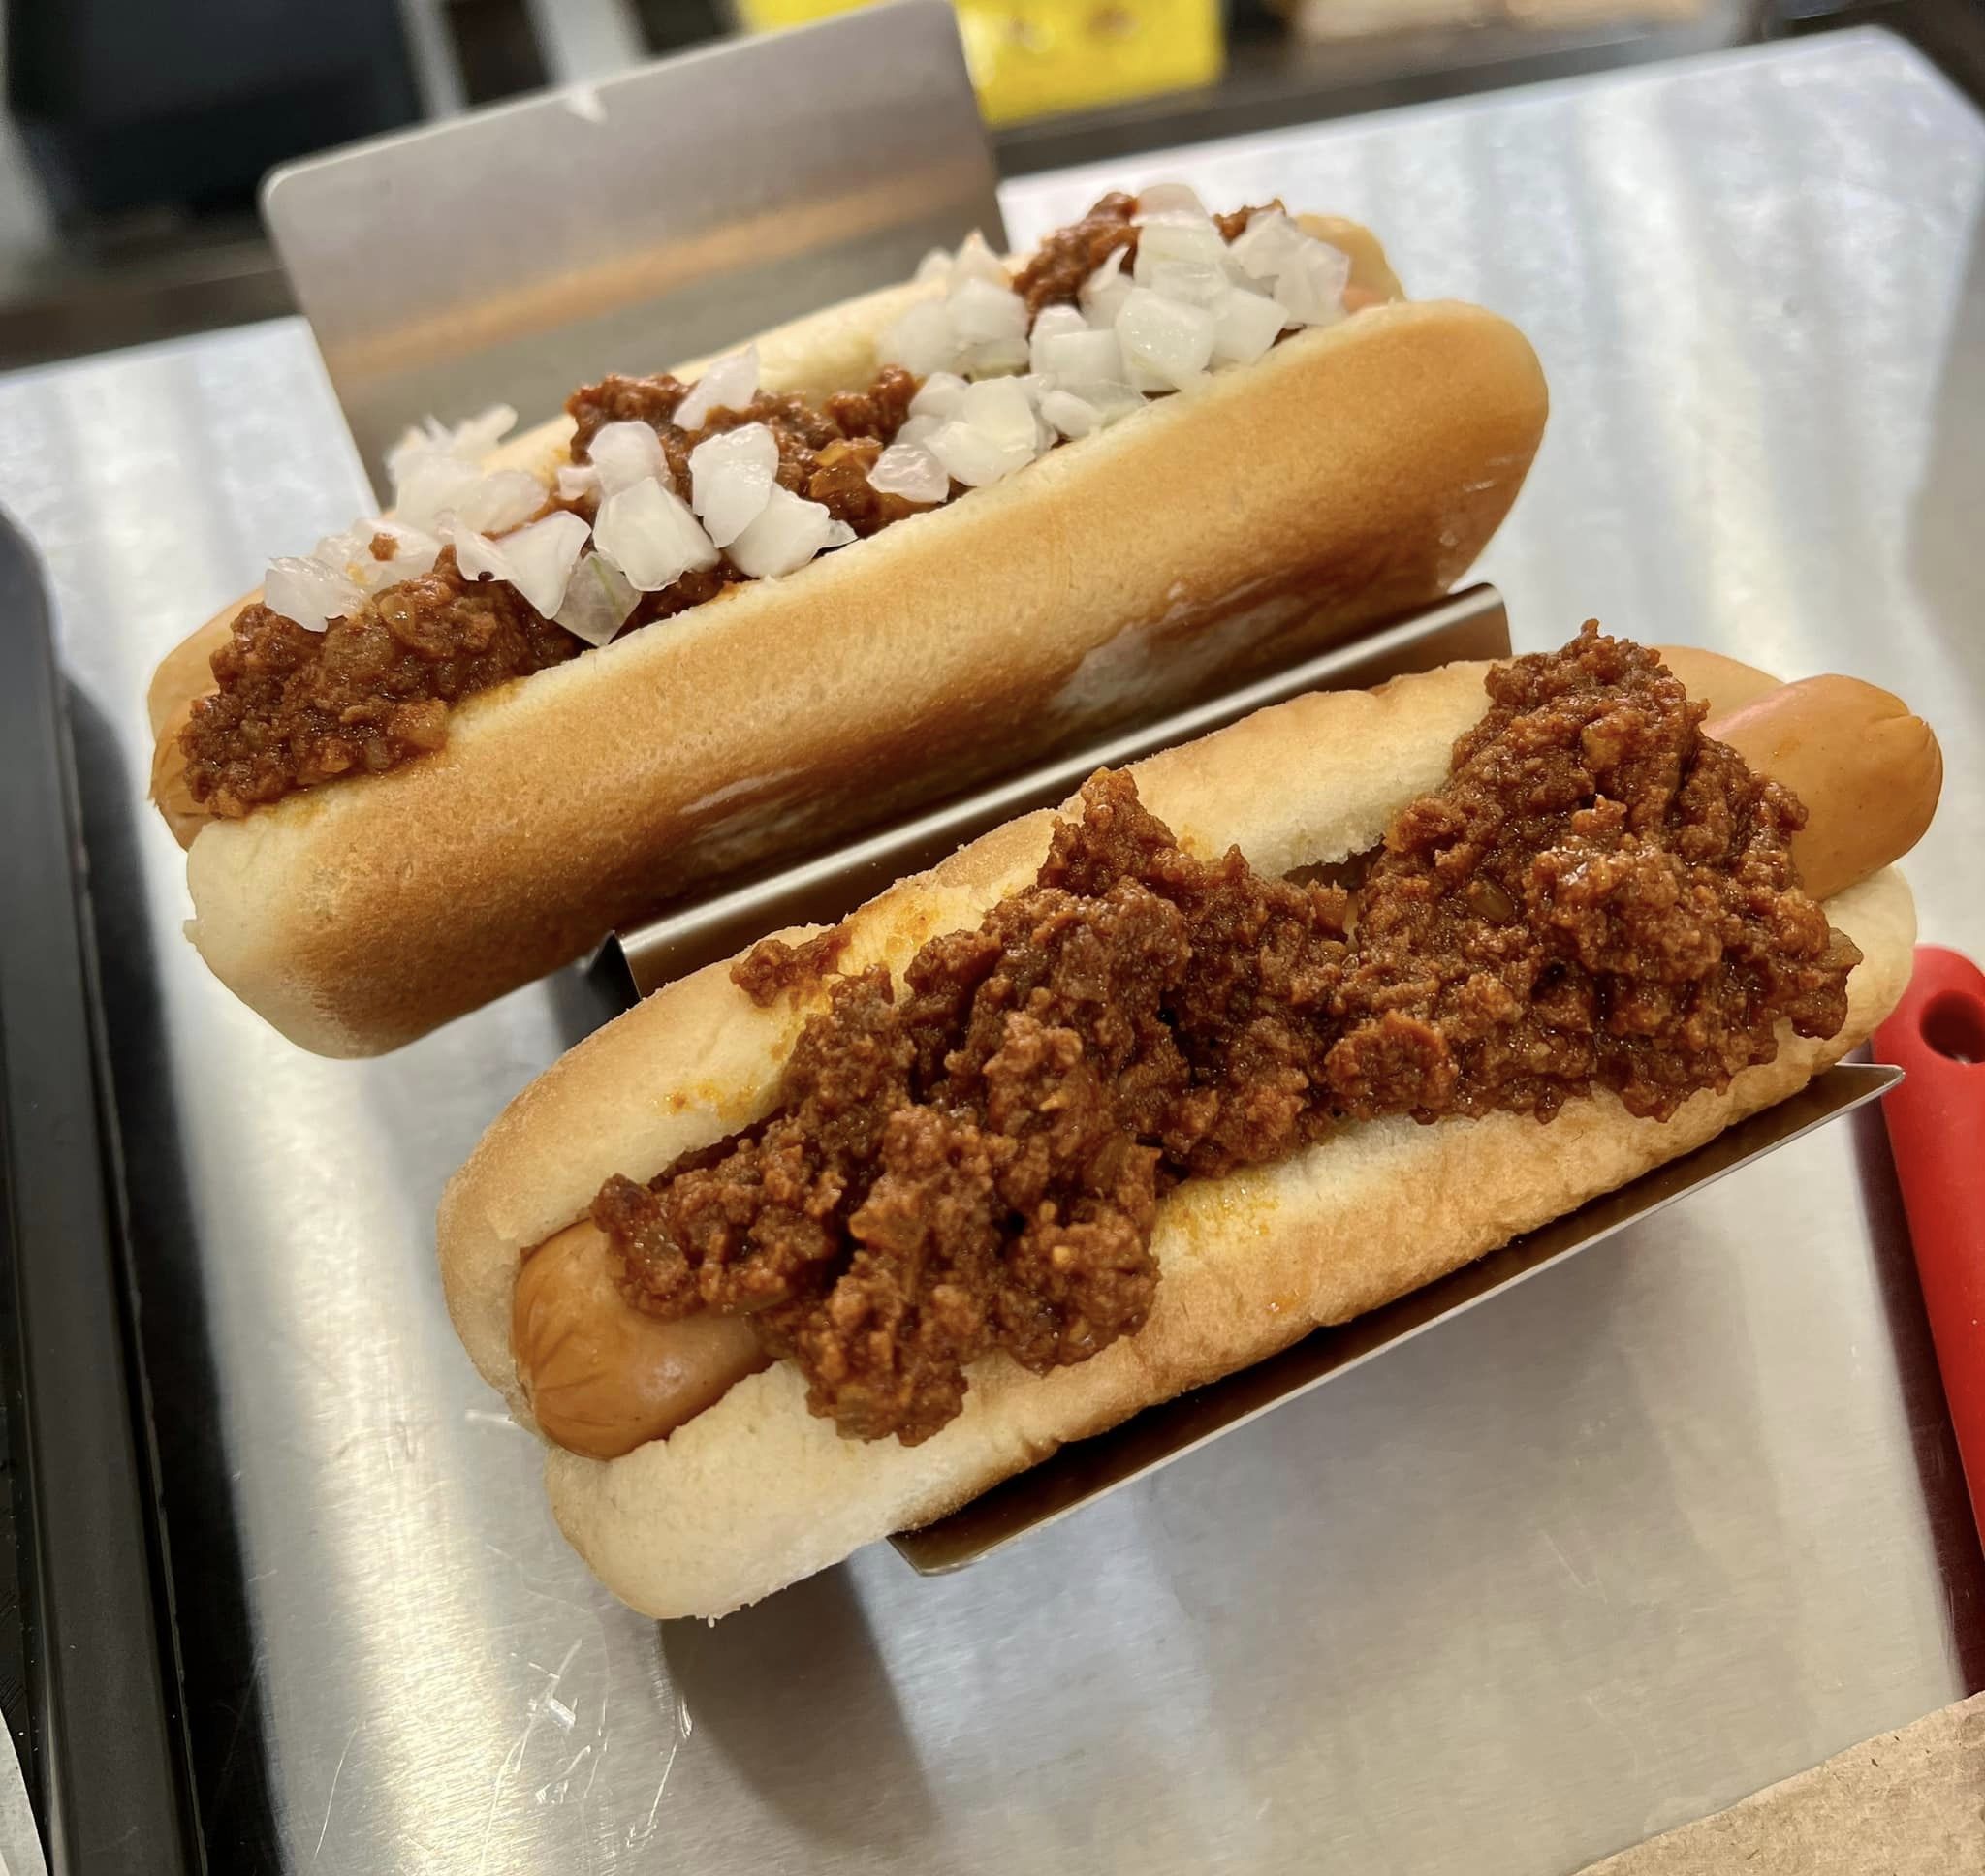 THE BEST 10 Hot Dogs in SALT LAKE CITY, UT - Last Updated December